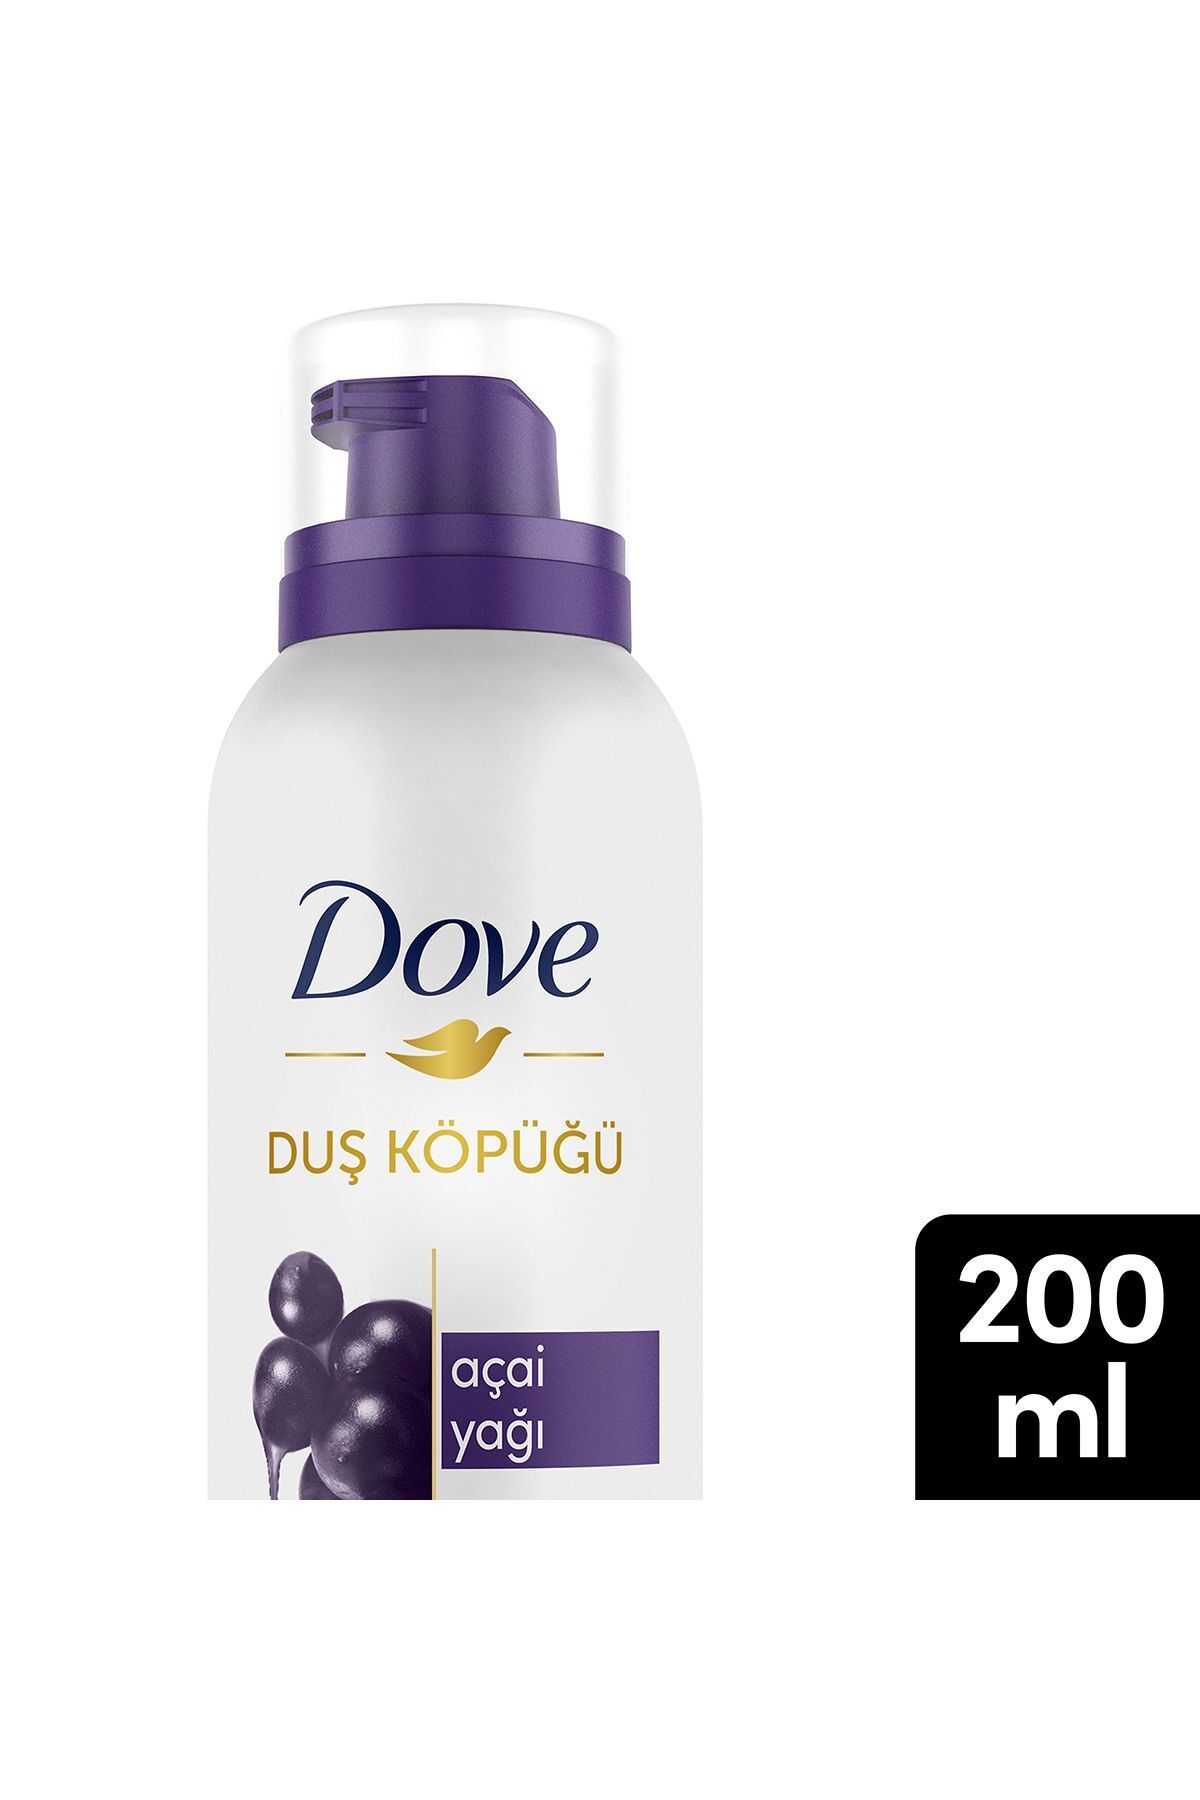 Dove Duş Köpüğü Açai Yağı Yoğun Köpük 200 ml X1